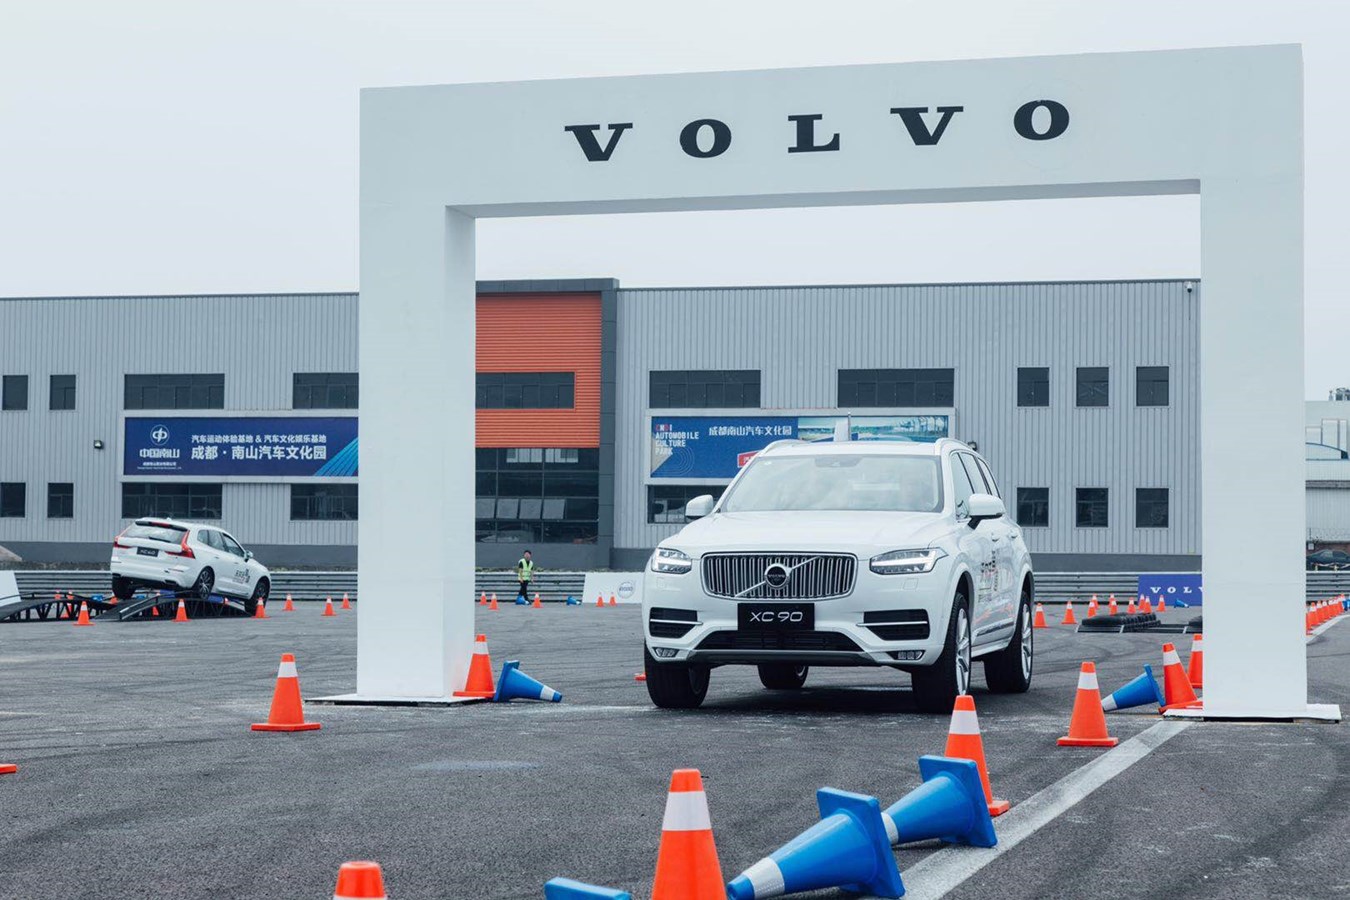 2019“沃尔沃驾道-安全驾控体验营”吸引众多参与者亲身体验非凡驾趣